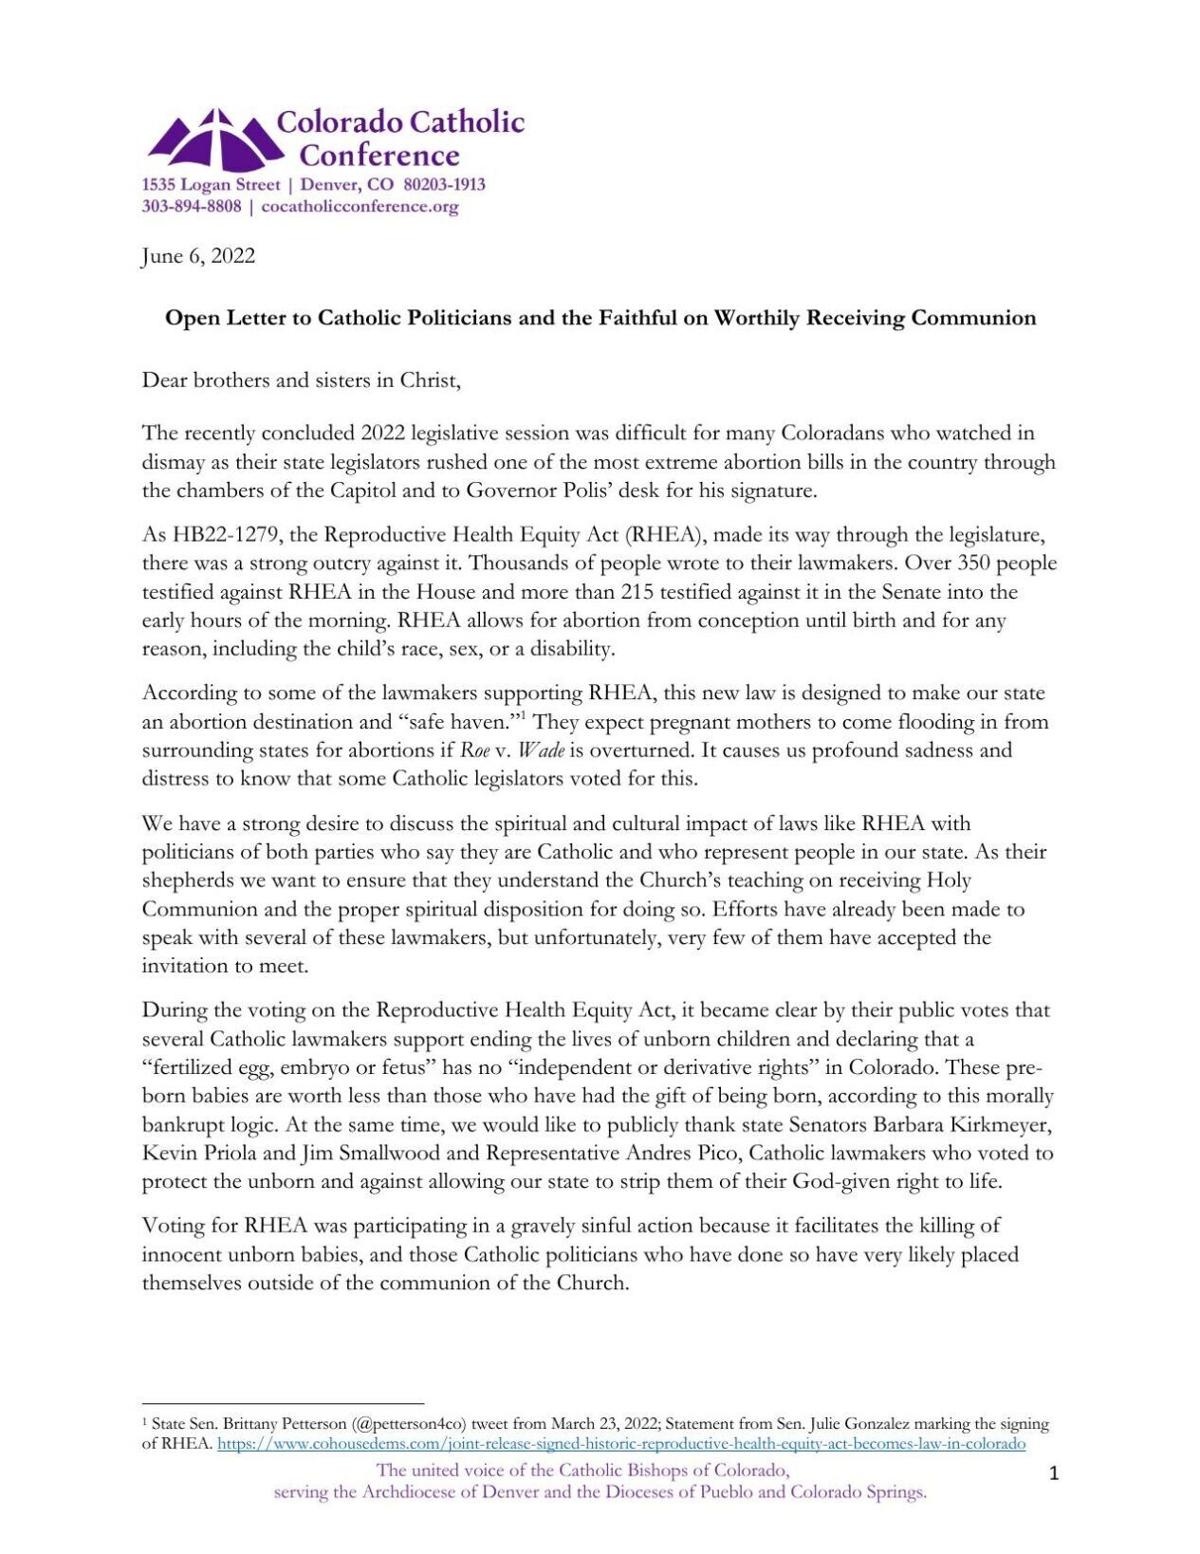 Colorado Catholic Bishops Holy Communion Letter